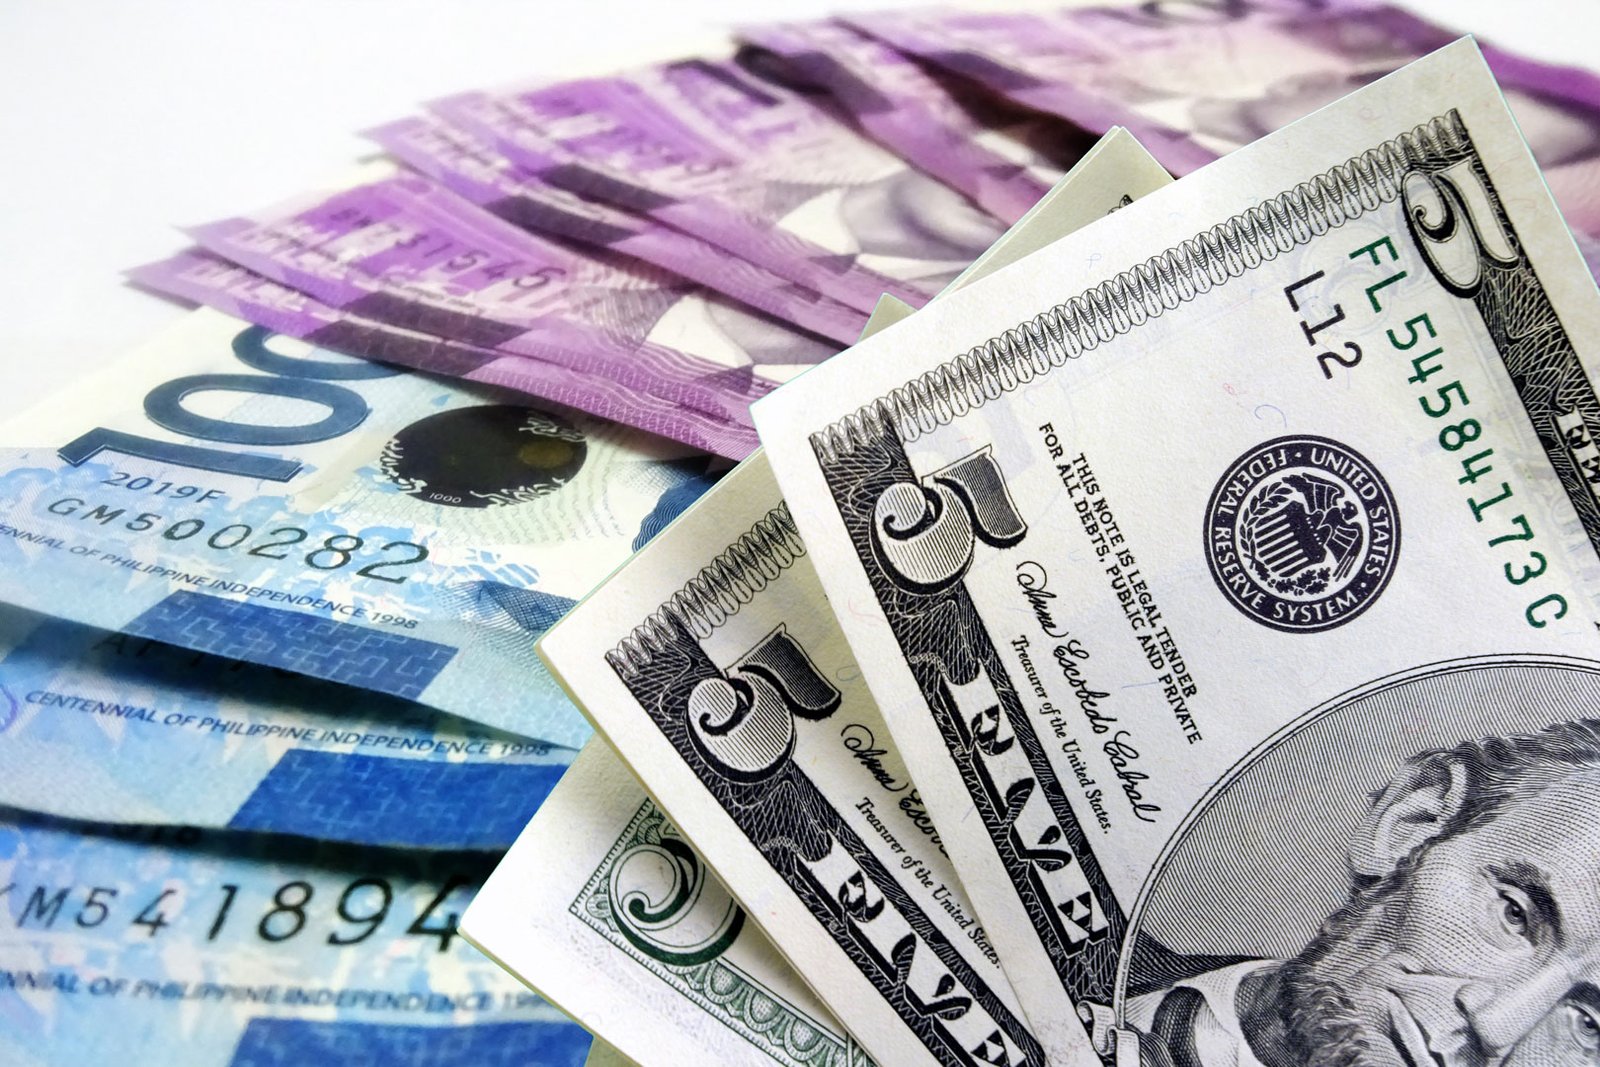 NG debt rises in April on weak peso